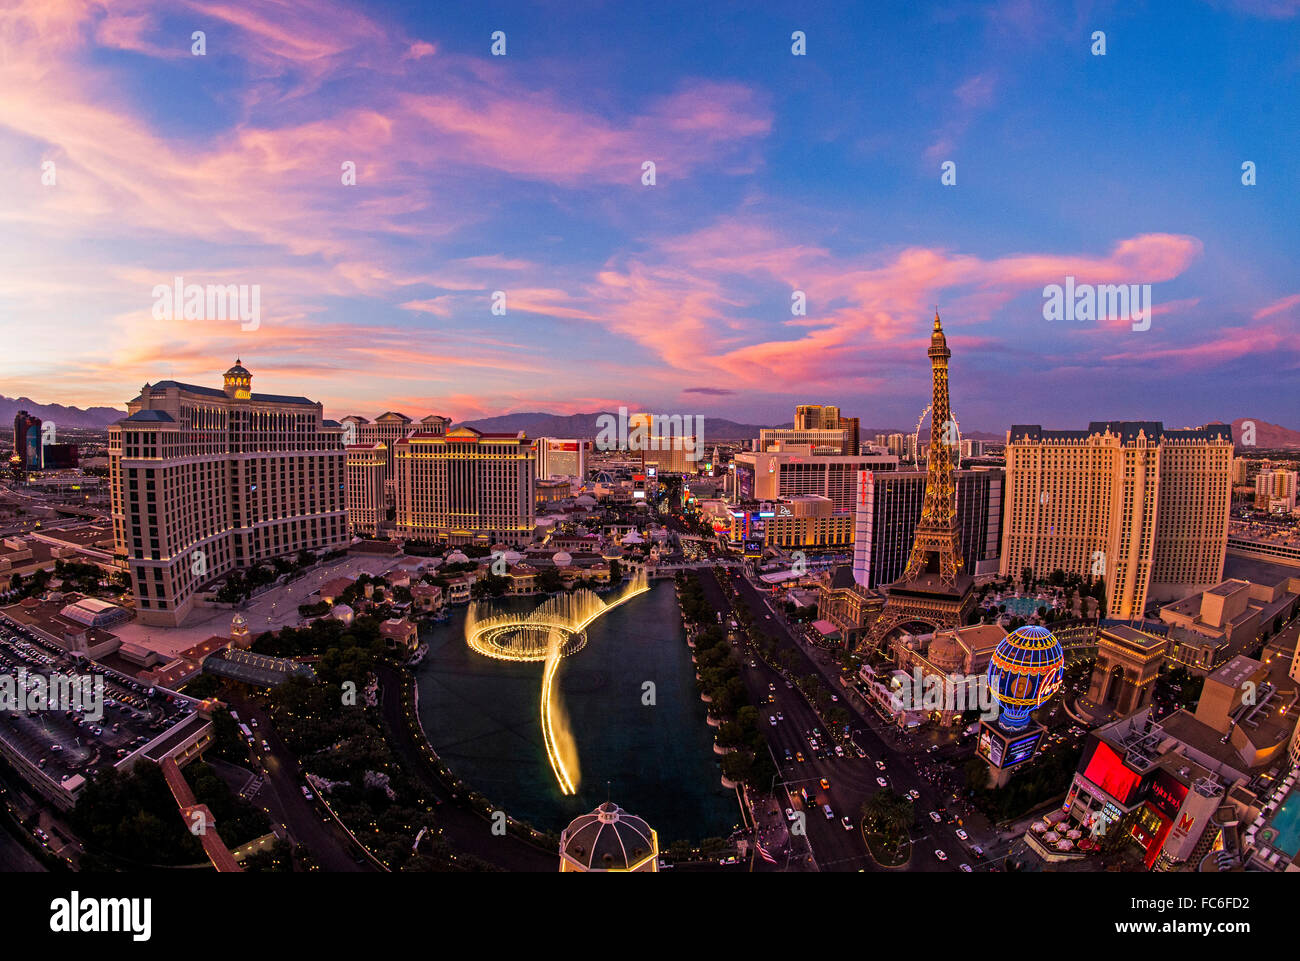 Vue fisheye de l'hôtel Bellagio Las Vegas skyline, fontaine, Paris et le Strip de Las Vegas au coucher du soleil. Banque D'Images